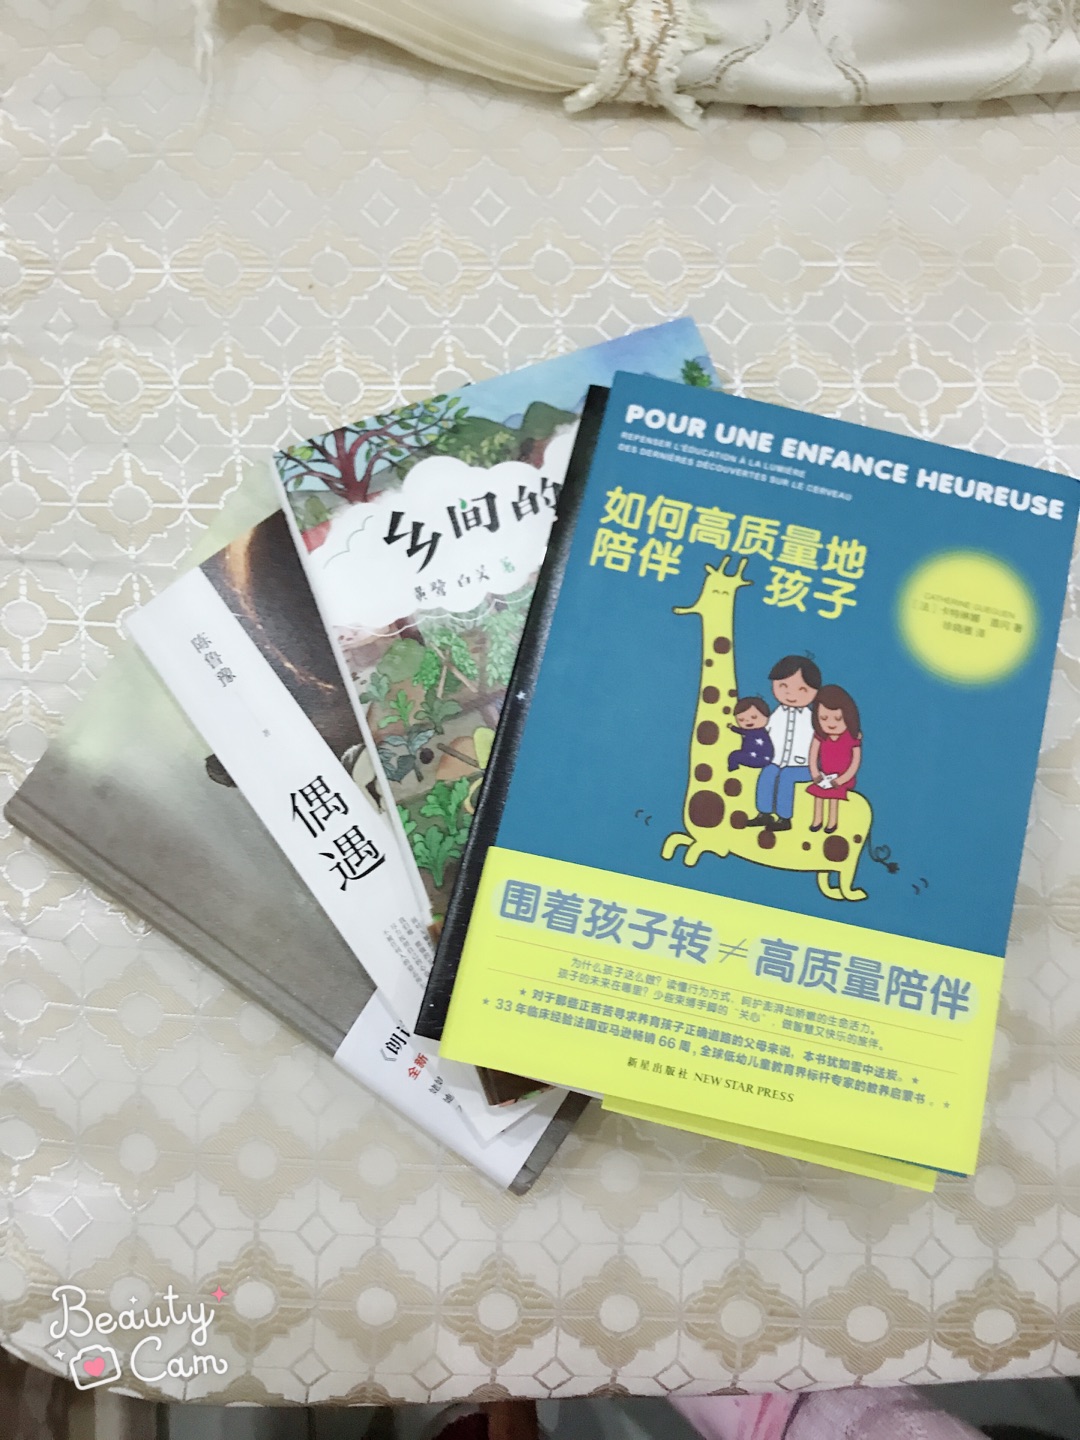 很喜欢倪萍老师的书 印刷配图都很用心 很精美 一次买了4本